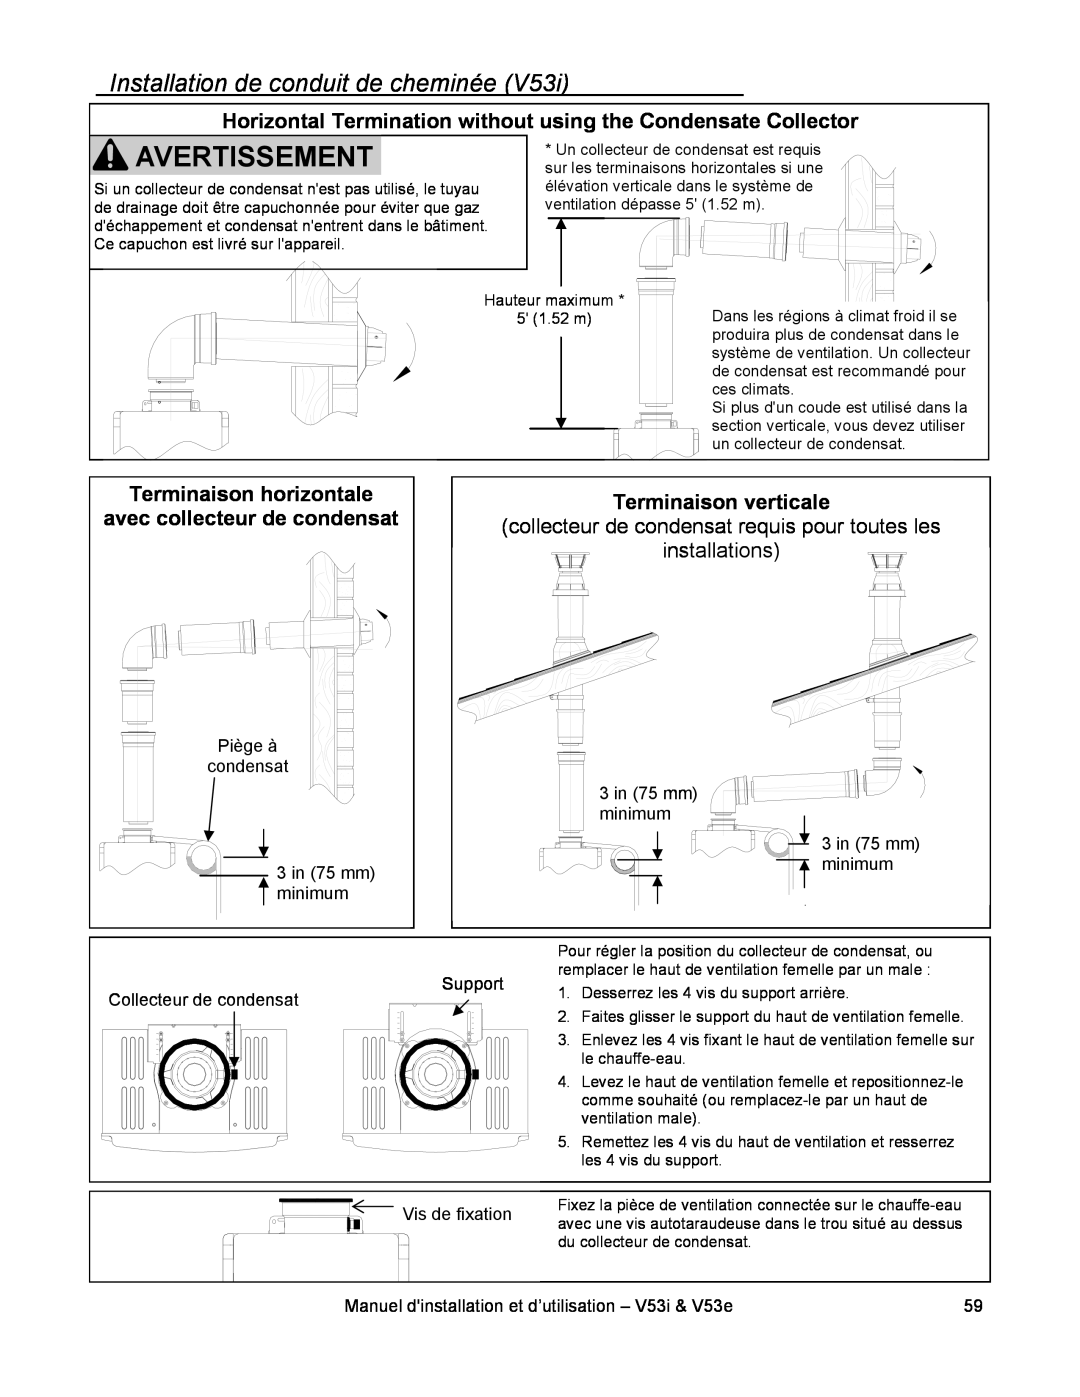 Rinnai V53I, V53E installation manual Installation de conduit de cheminée, Vis de fixation 